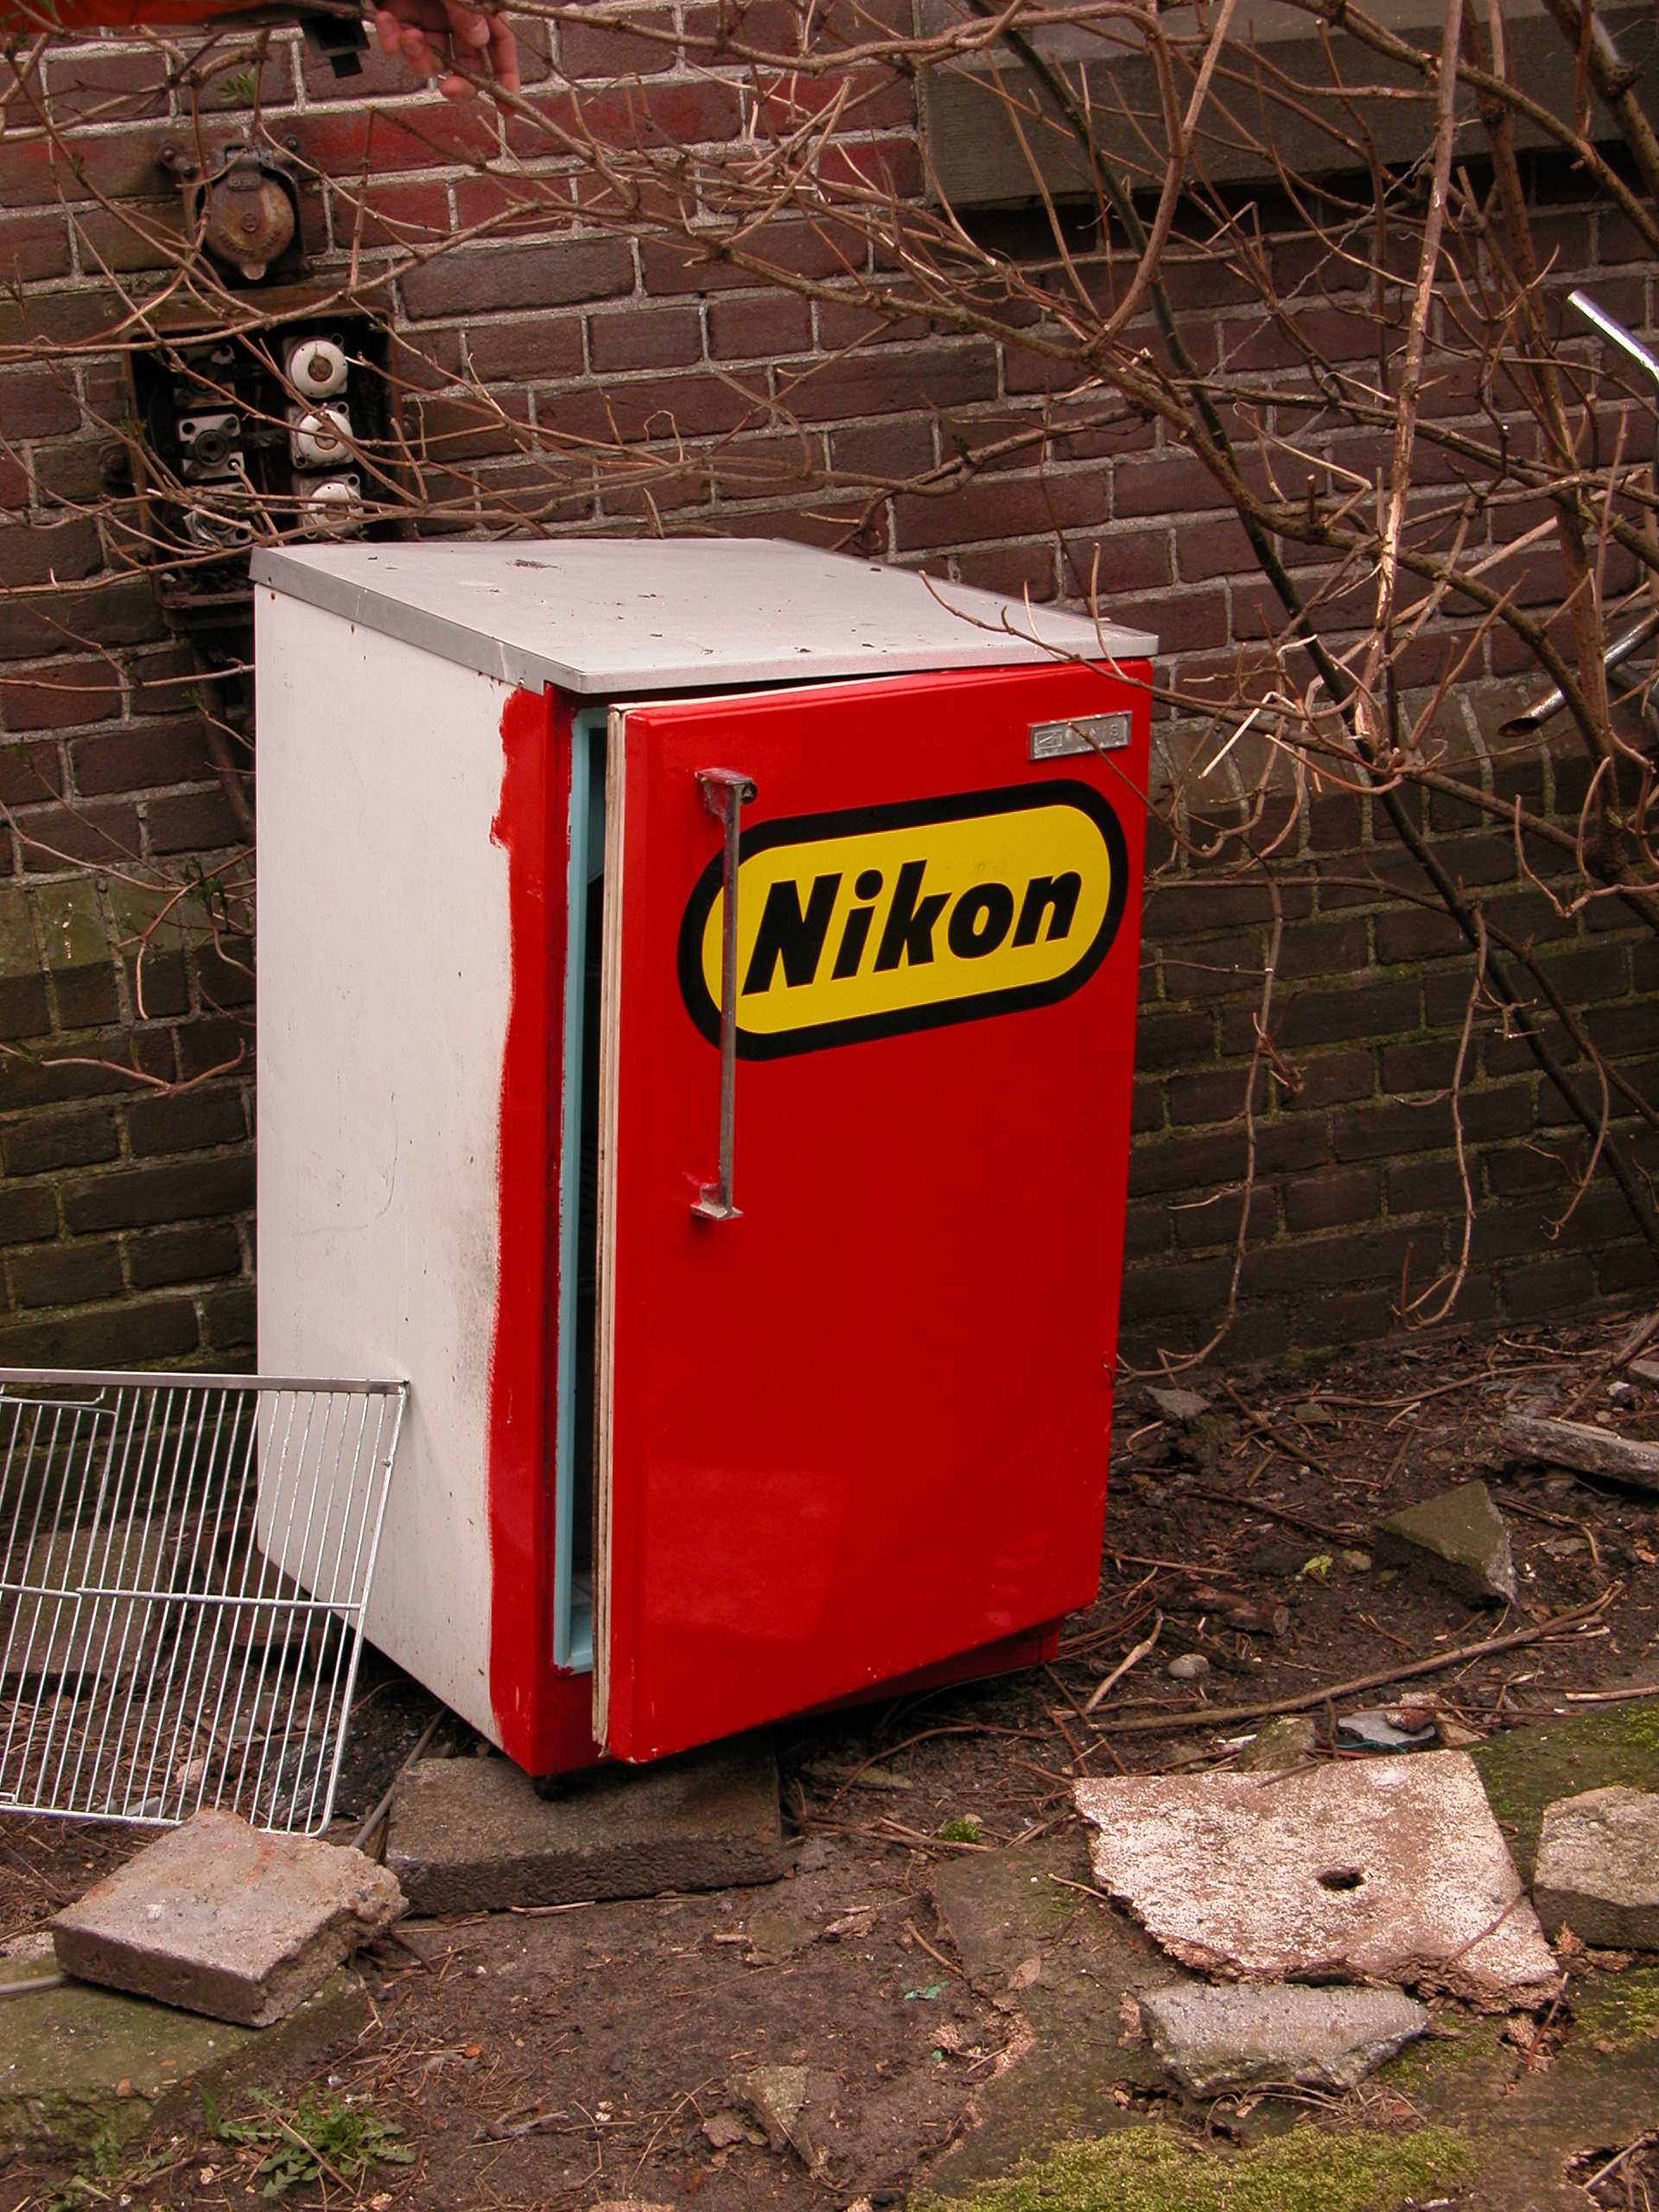 objects household fridge refridgerator nikon brand logo red